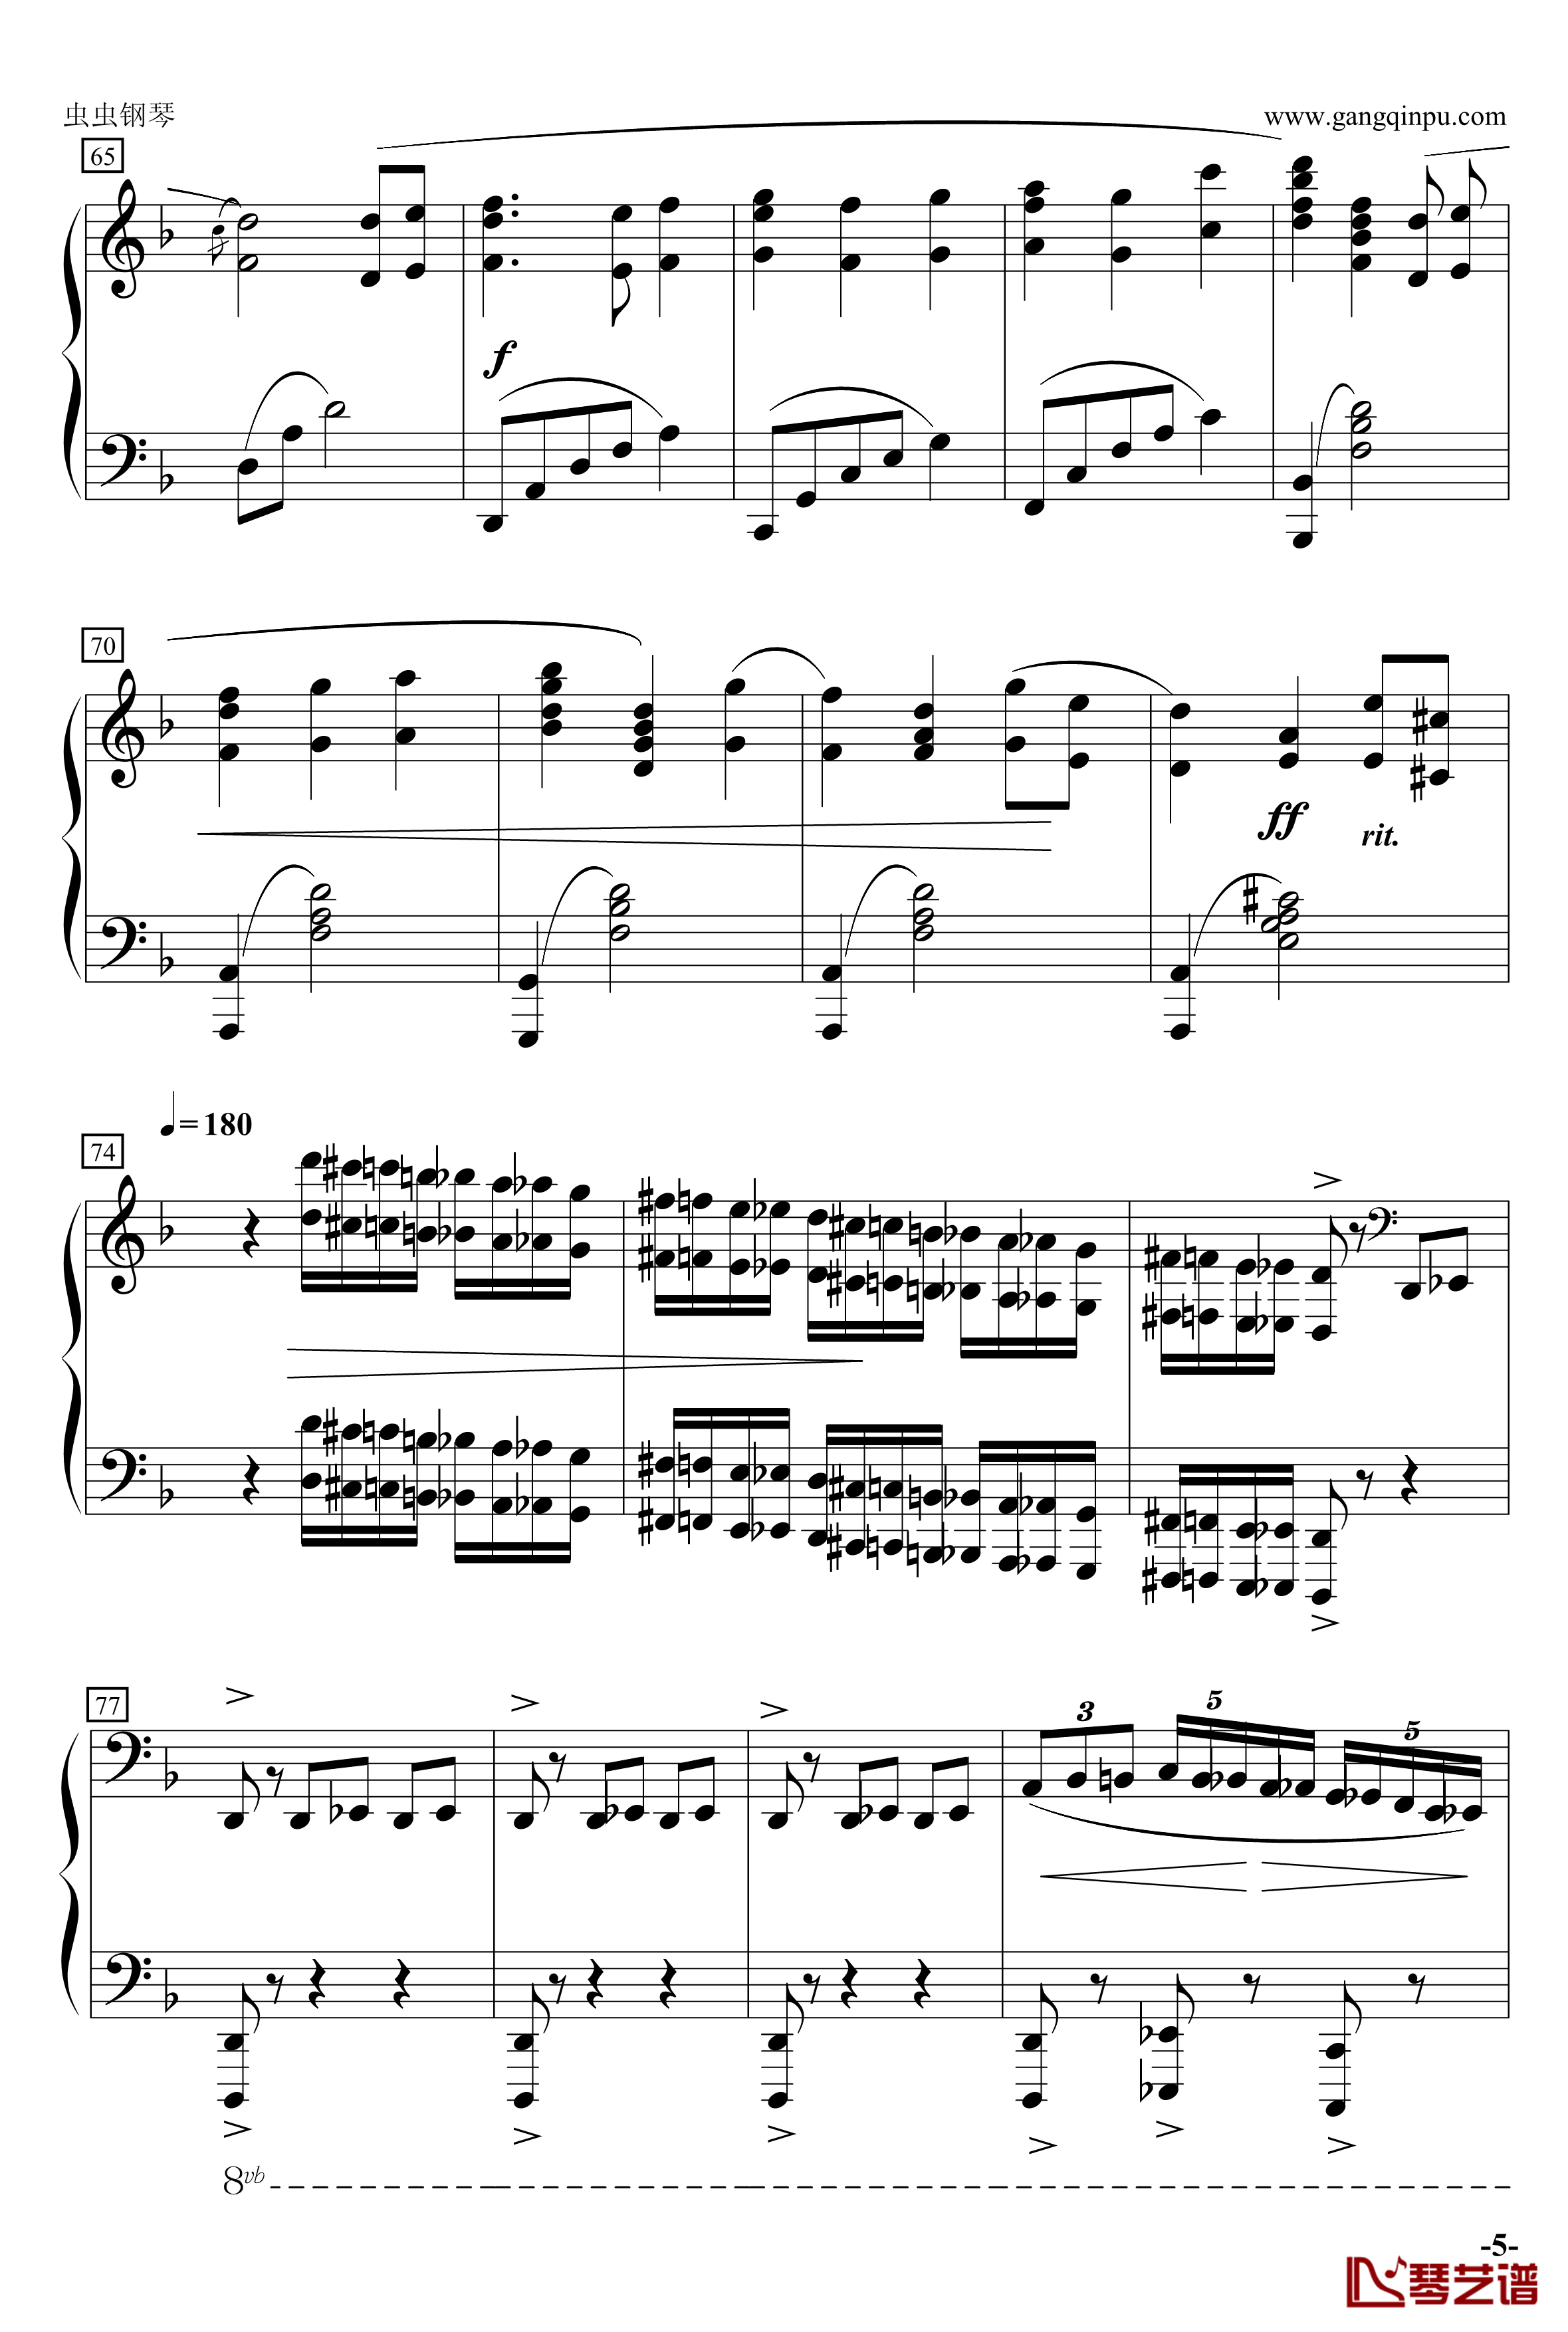 加勒比海盗主题曲钢琴谱-演奏改编版-克劳斯.巴代特5